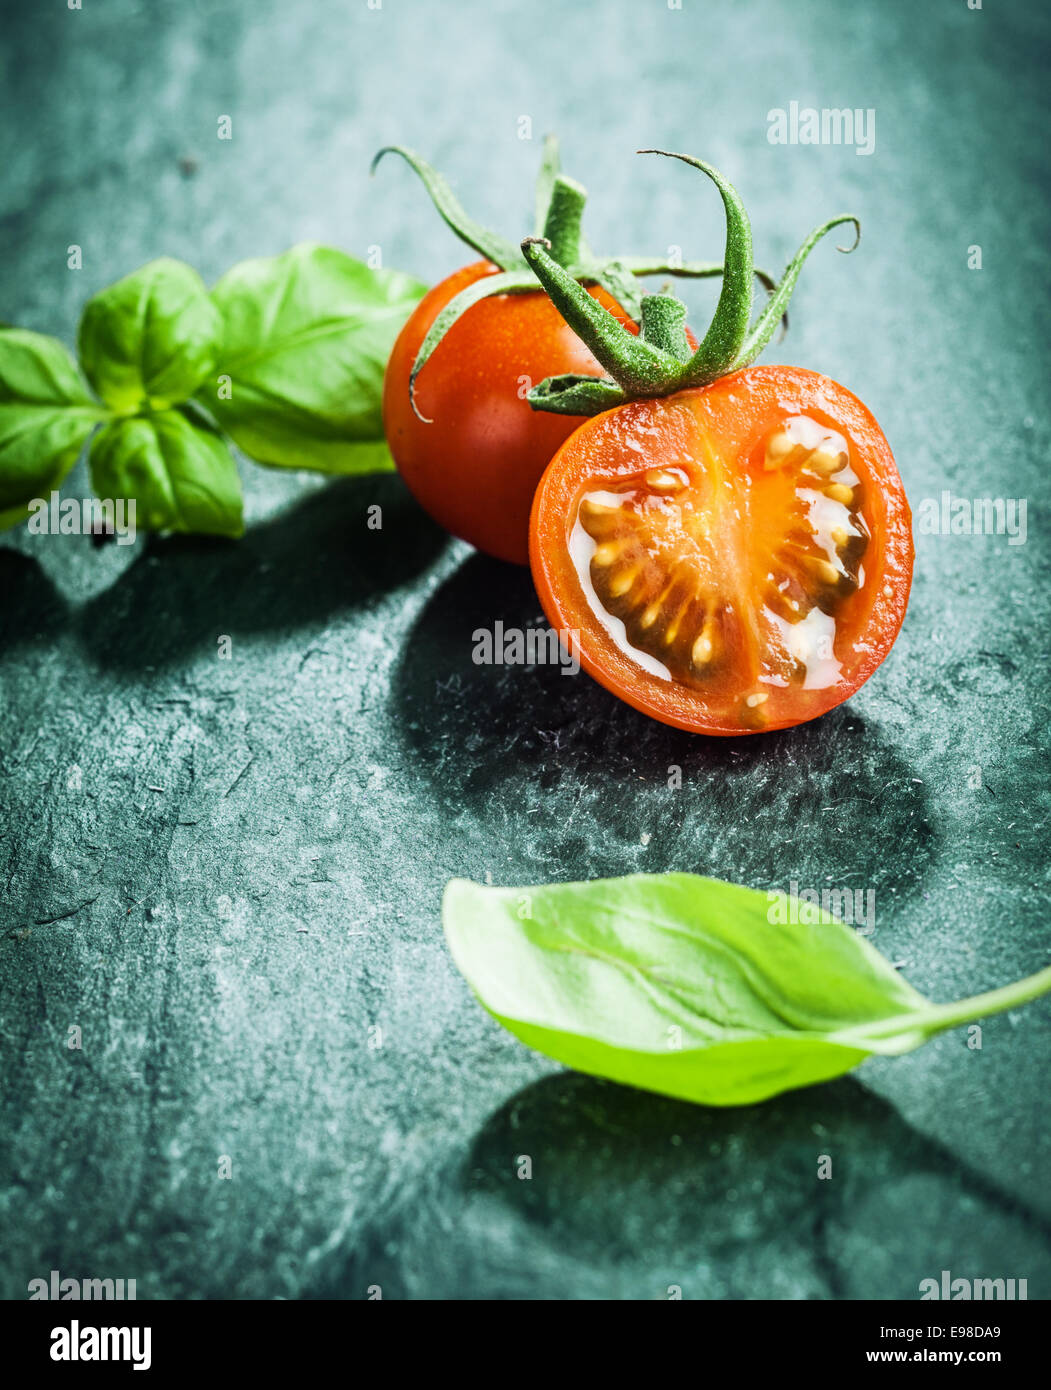 Frische Basilikumblätter mit halbierten saftige Reife rote Traube Tomaten bereit für das Kochen eines schmackhaften Gericht auf eine dunkle strukturierte Oberfläche Stockfoto